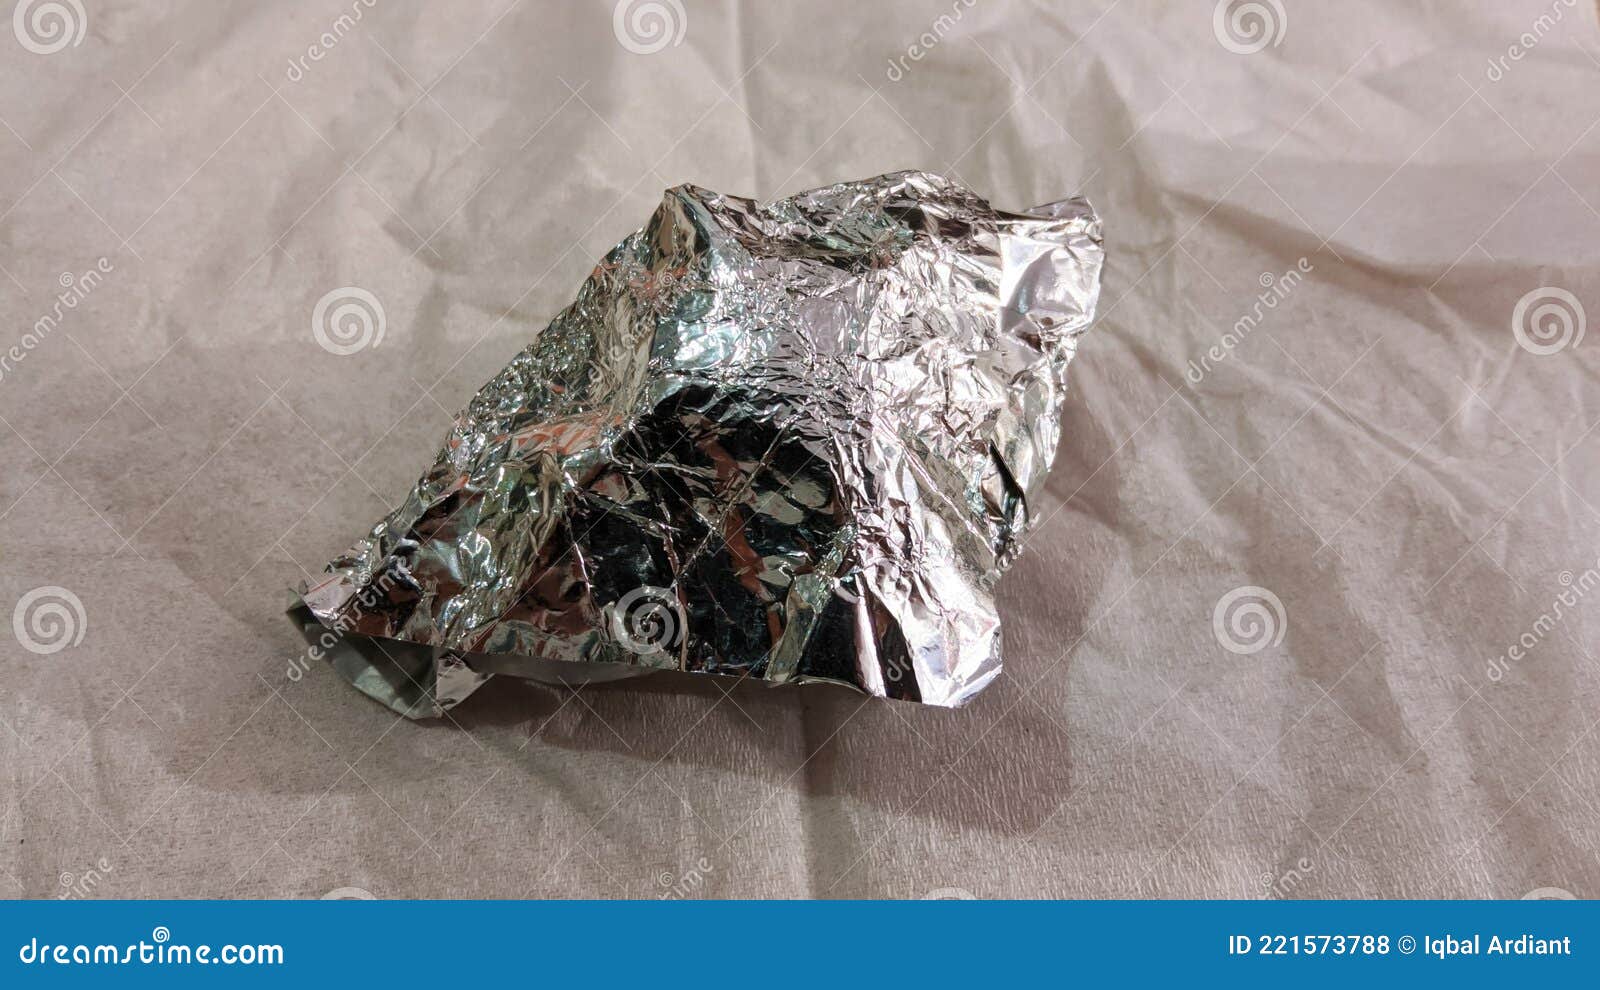 aluminum foil used for coating in cigarette packs.